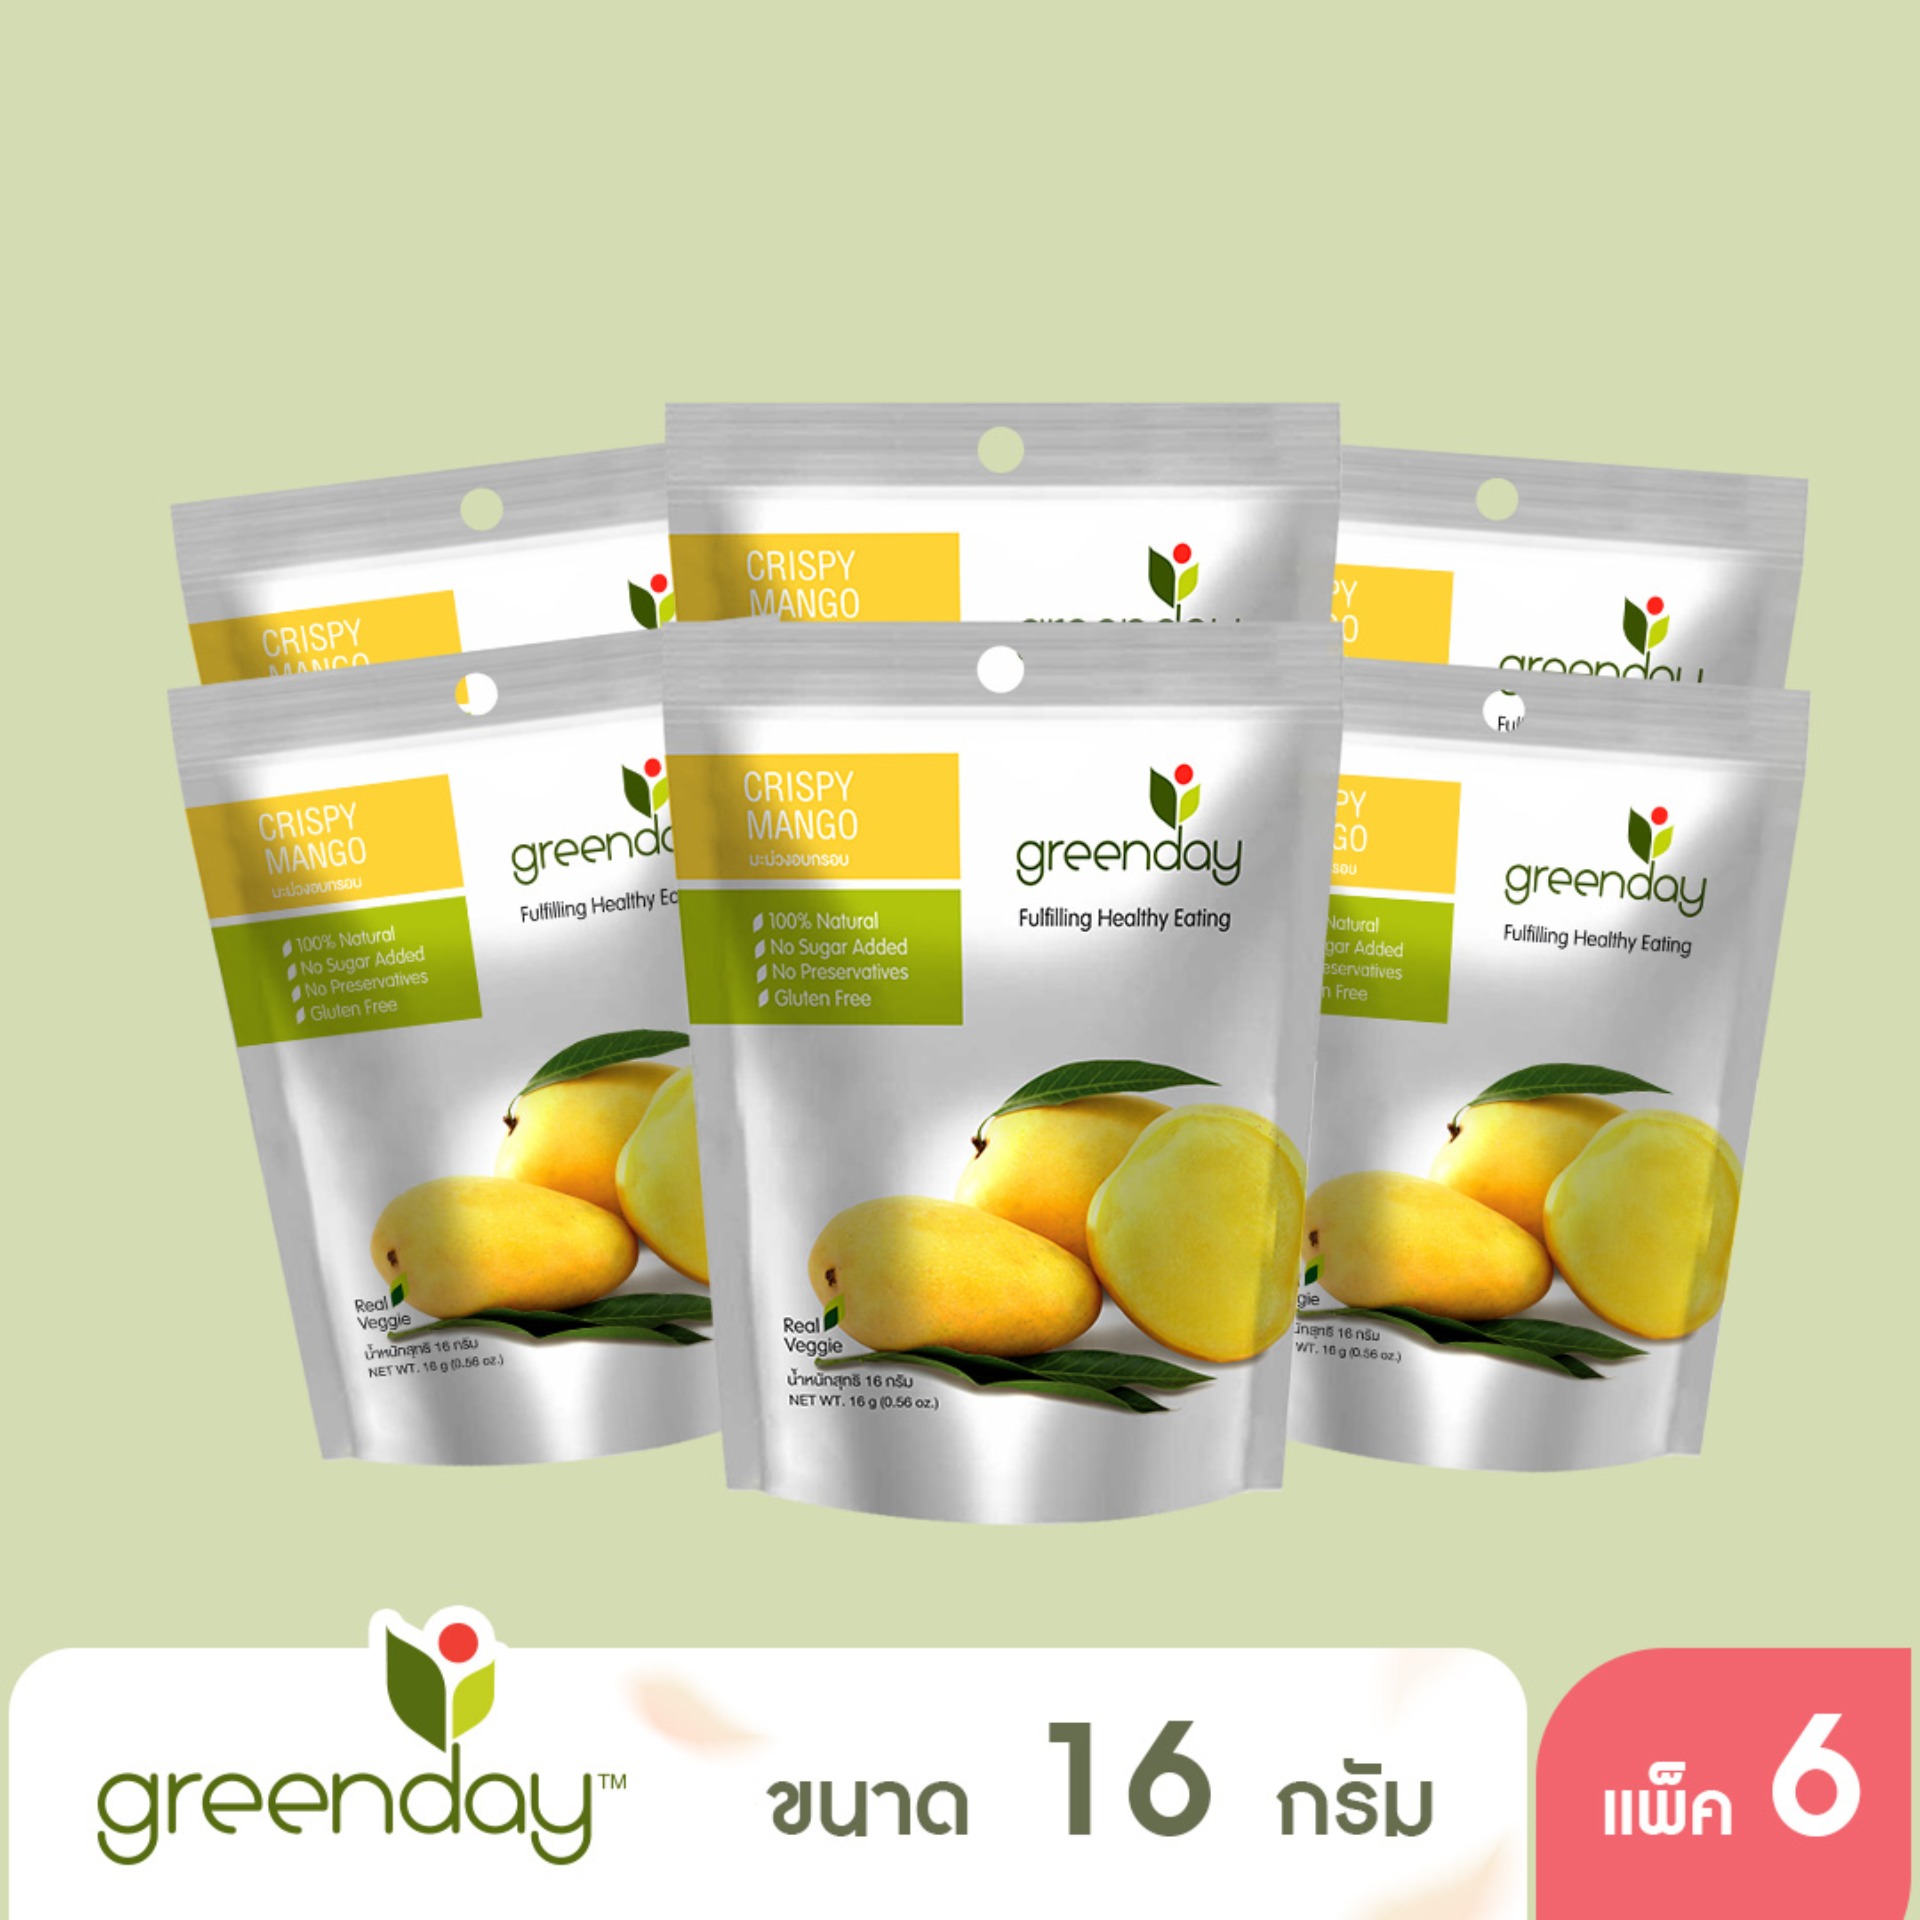 [แพ็ก 6] Greenday Crispy Mango มะม่วงอบกรอบ 16 กรัม